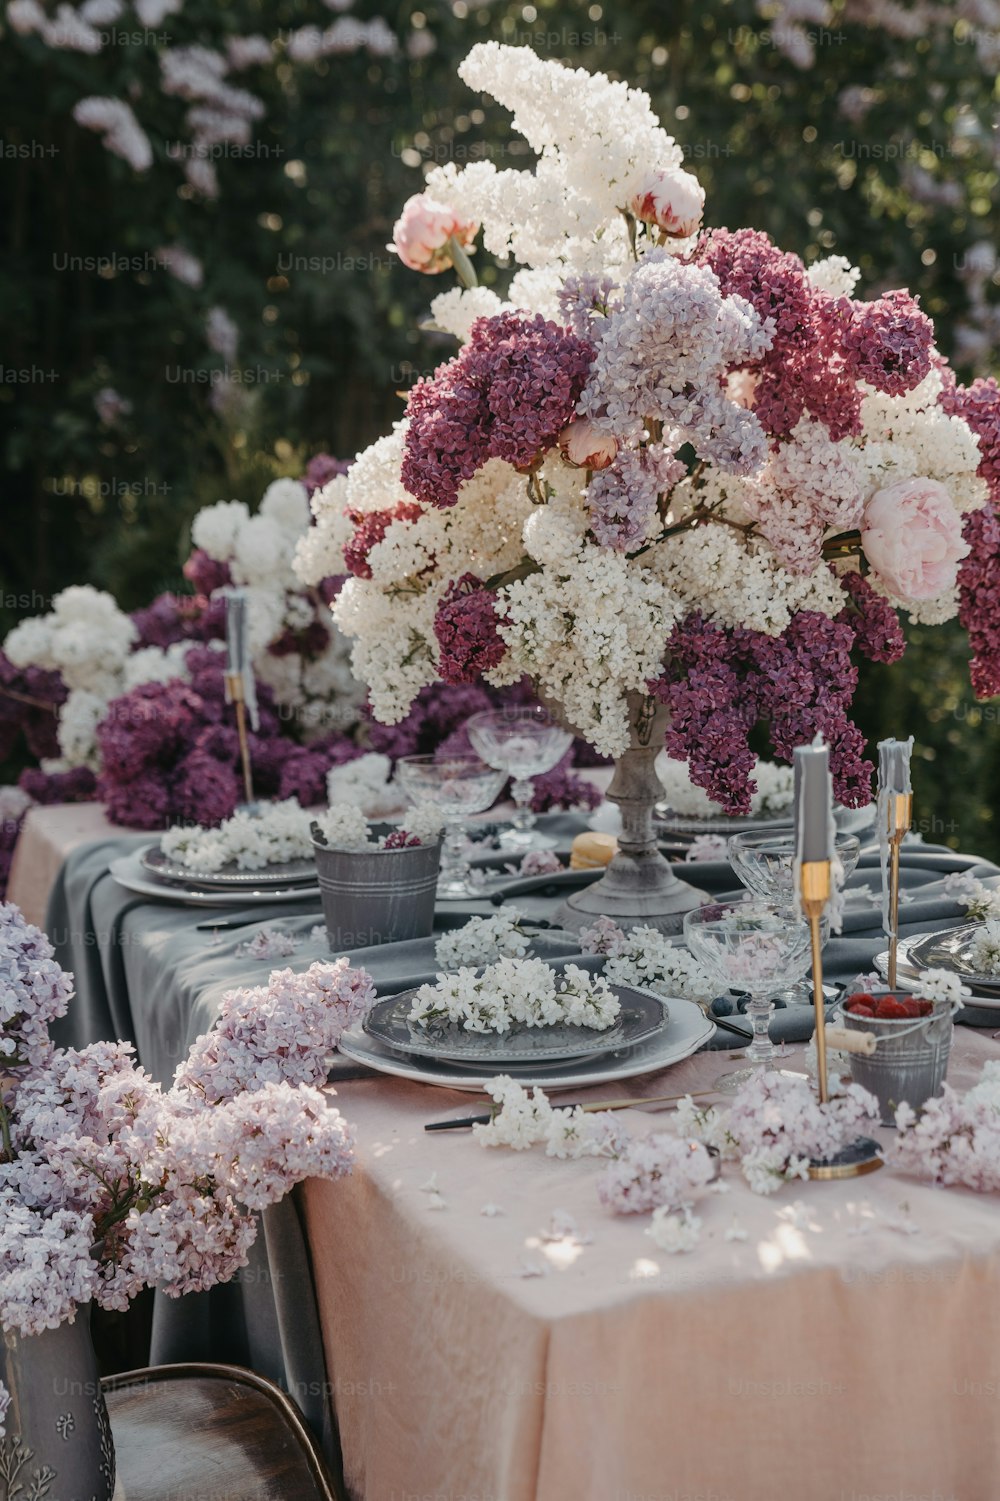 テーブルには皿と花がセットされています